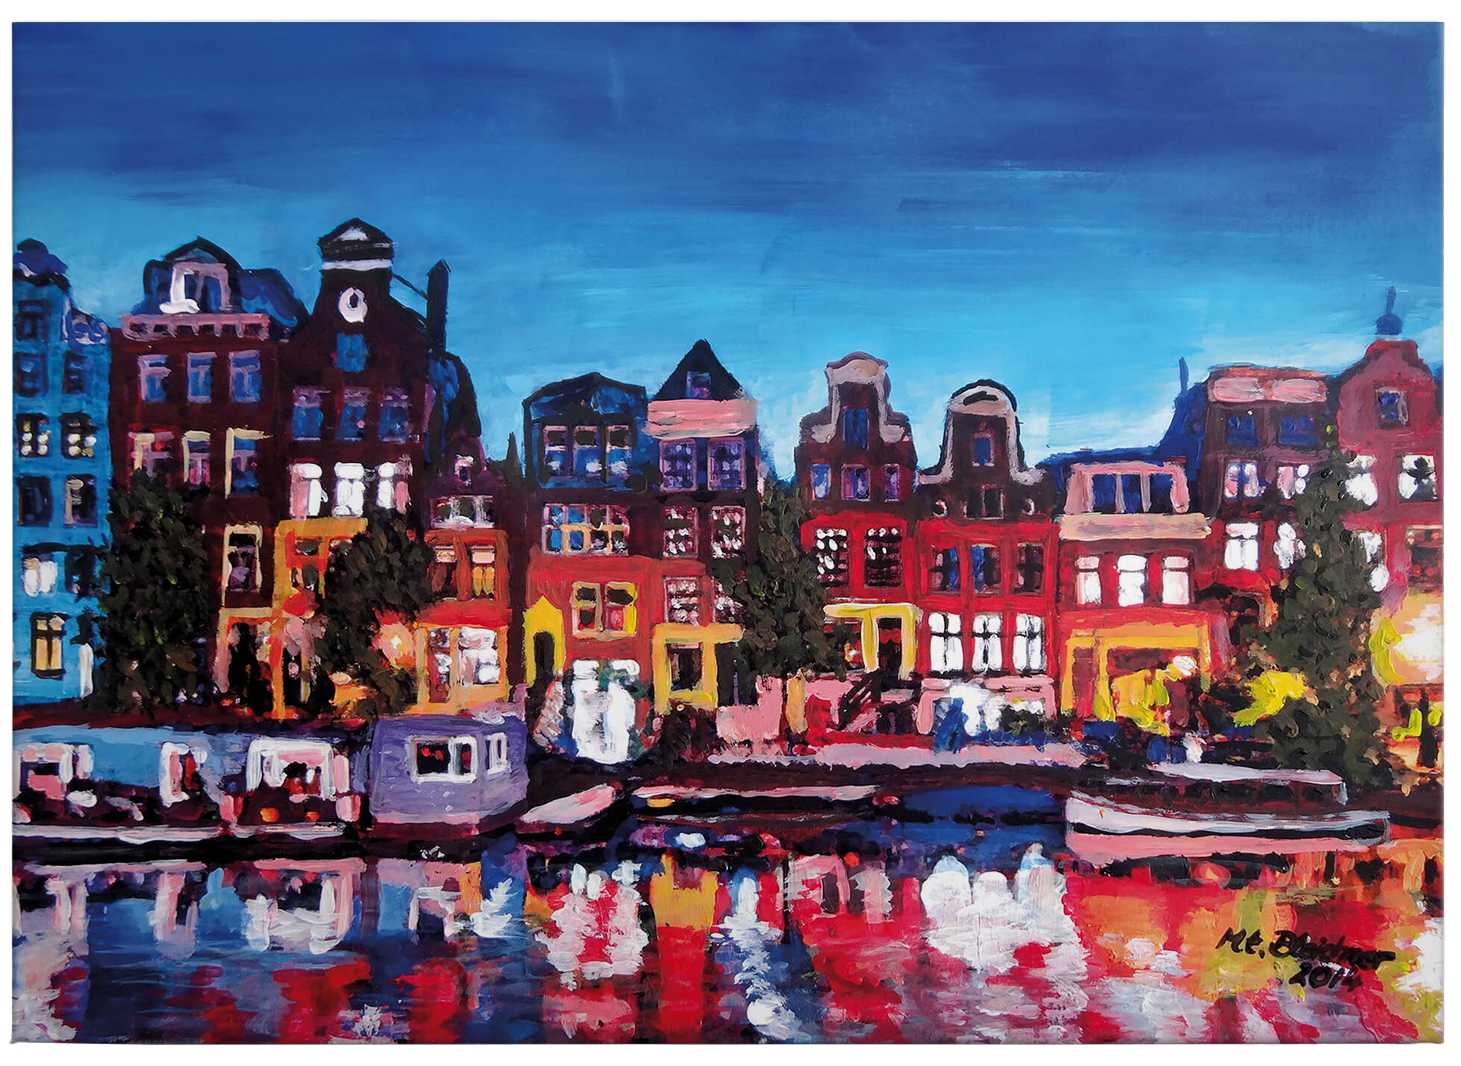             Canvas schilderij "Amsterdam" van Bleichner - 0.70 m x 0.50 m
        